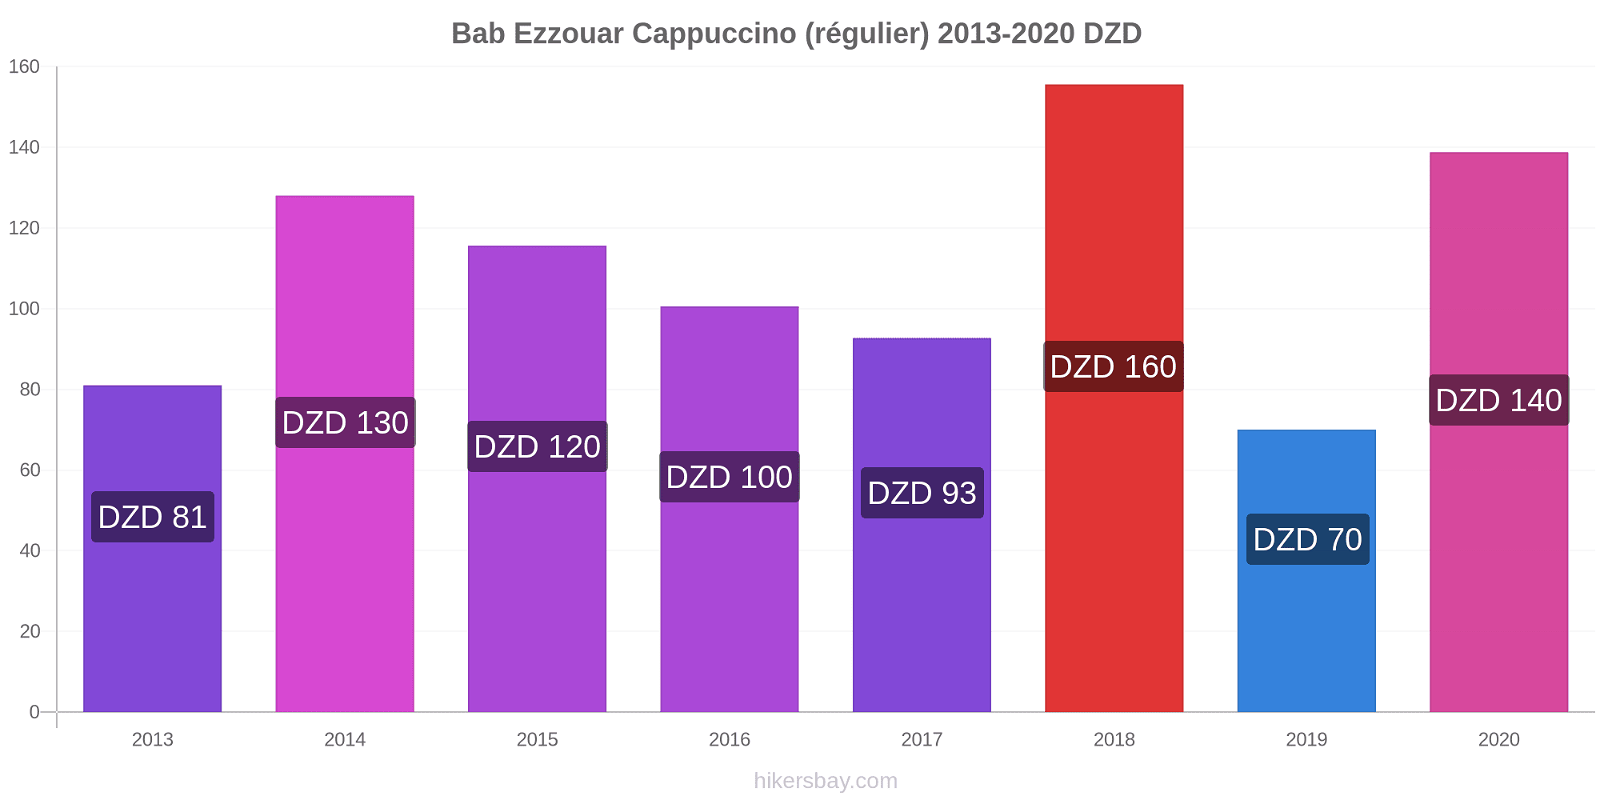 Bab Ezzouar changements de prix Cappuccino (régulier) hikersbay.com